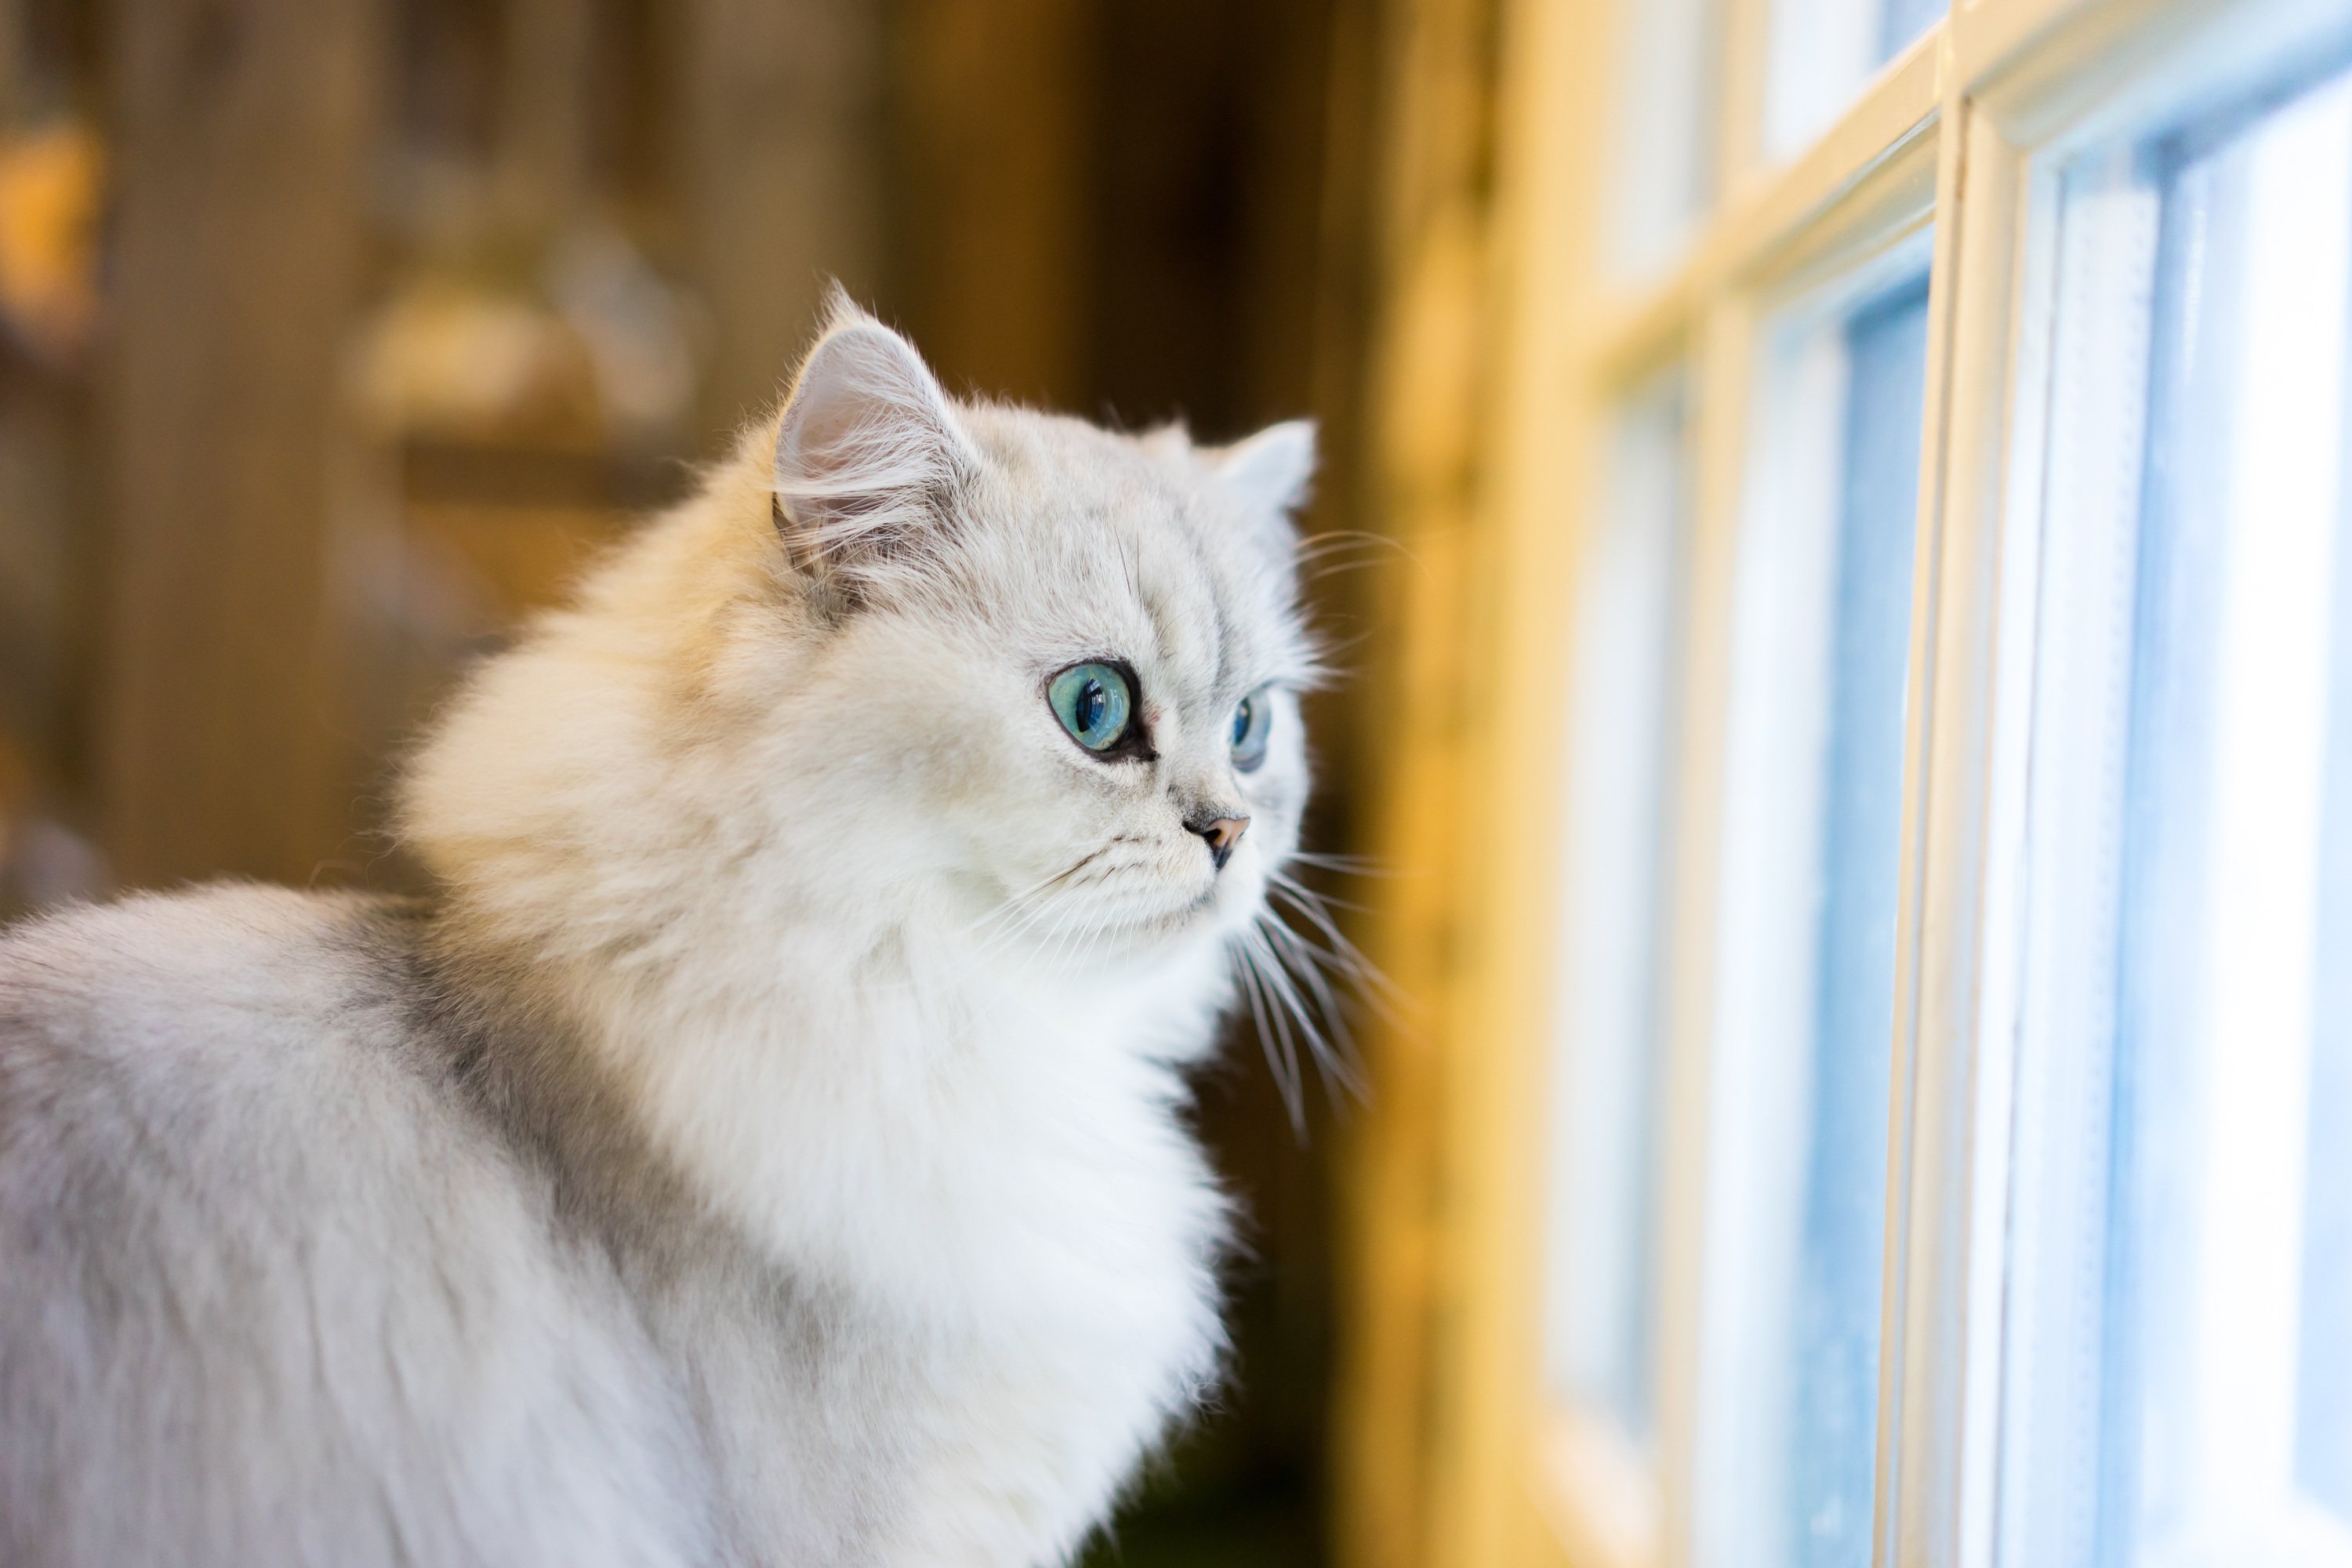 5 raisons pour lesquelles des races de chats sont chères - Santévet